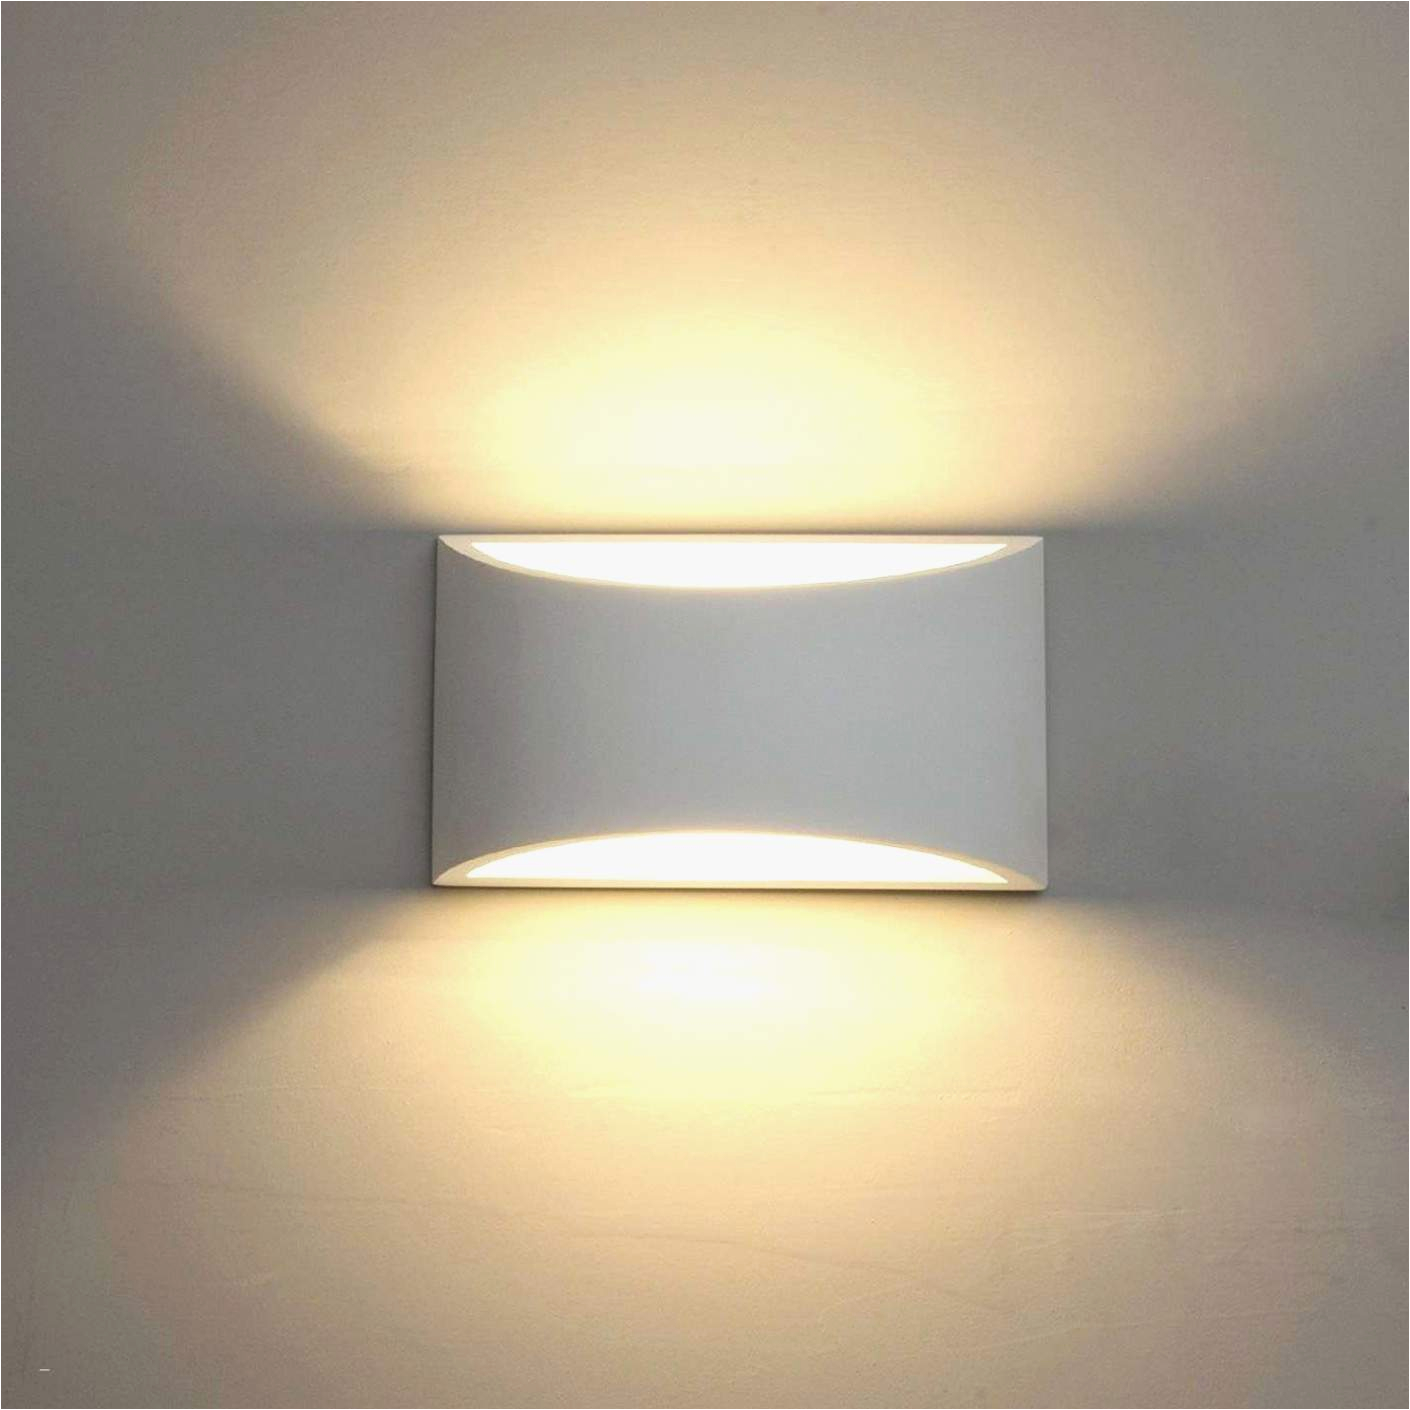 Lampe Schlafzimmer Design Deckenlampe Wohnzimmer Modern Inspirierend Deckenlampe